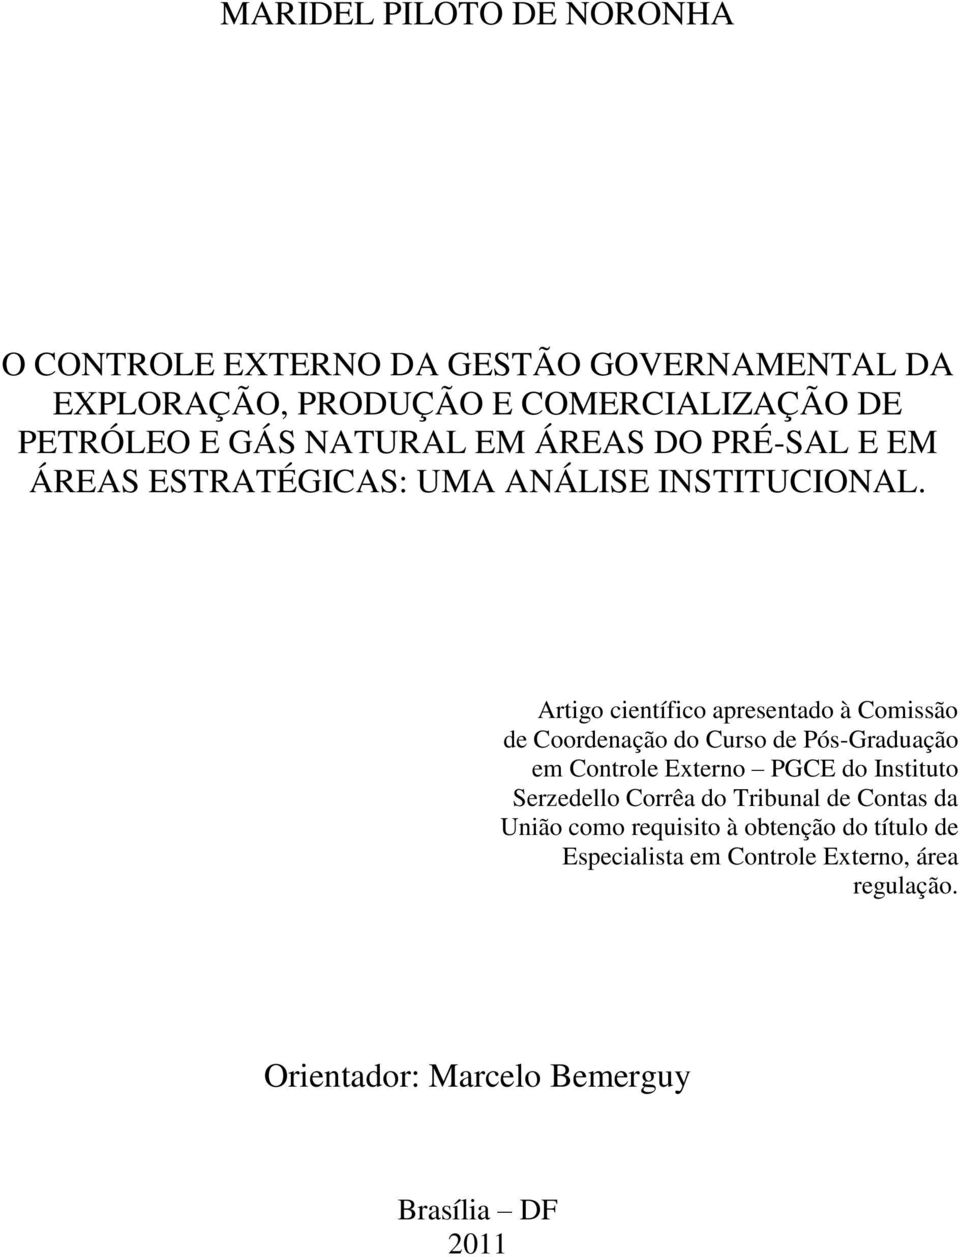 Artigo científico apresentado à Comissão de Coordenação do Curso de Pós-Graduação em Controle Externo PGCE do Instituto